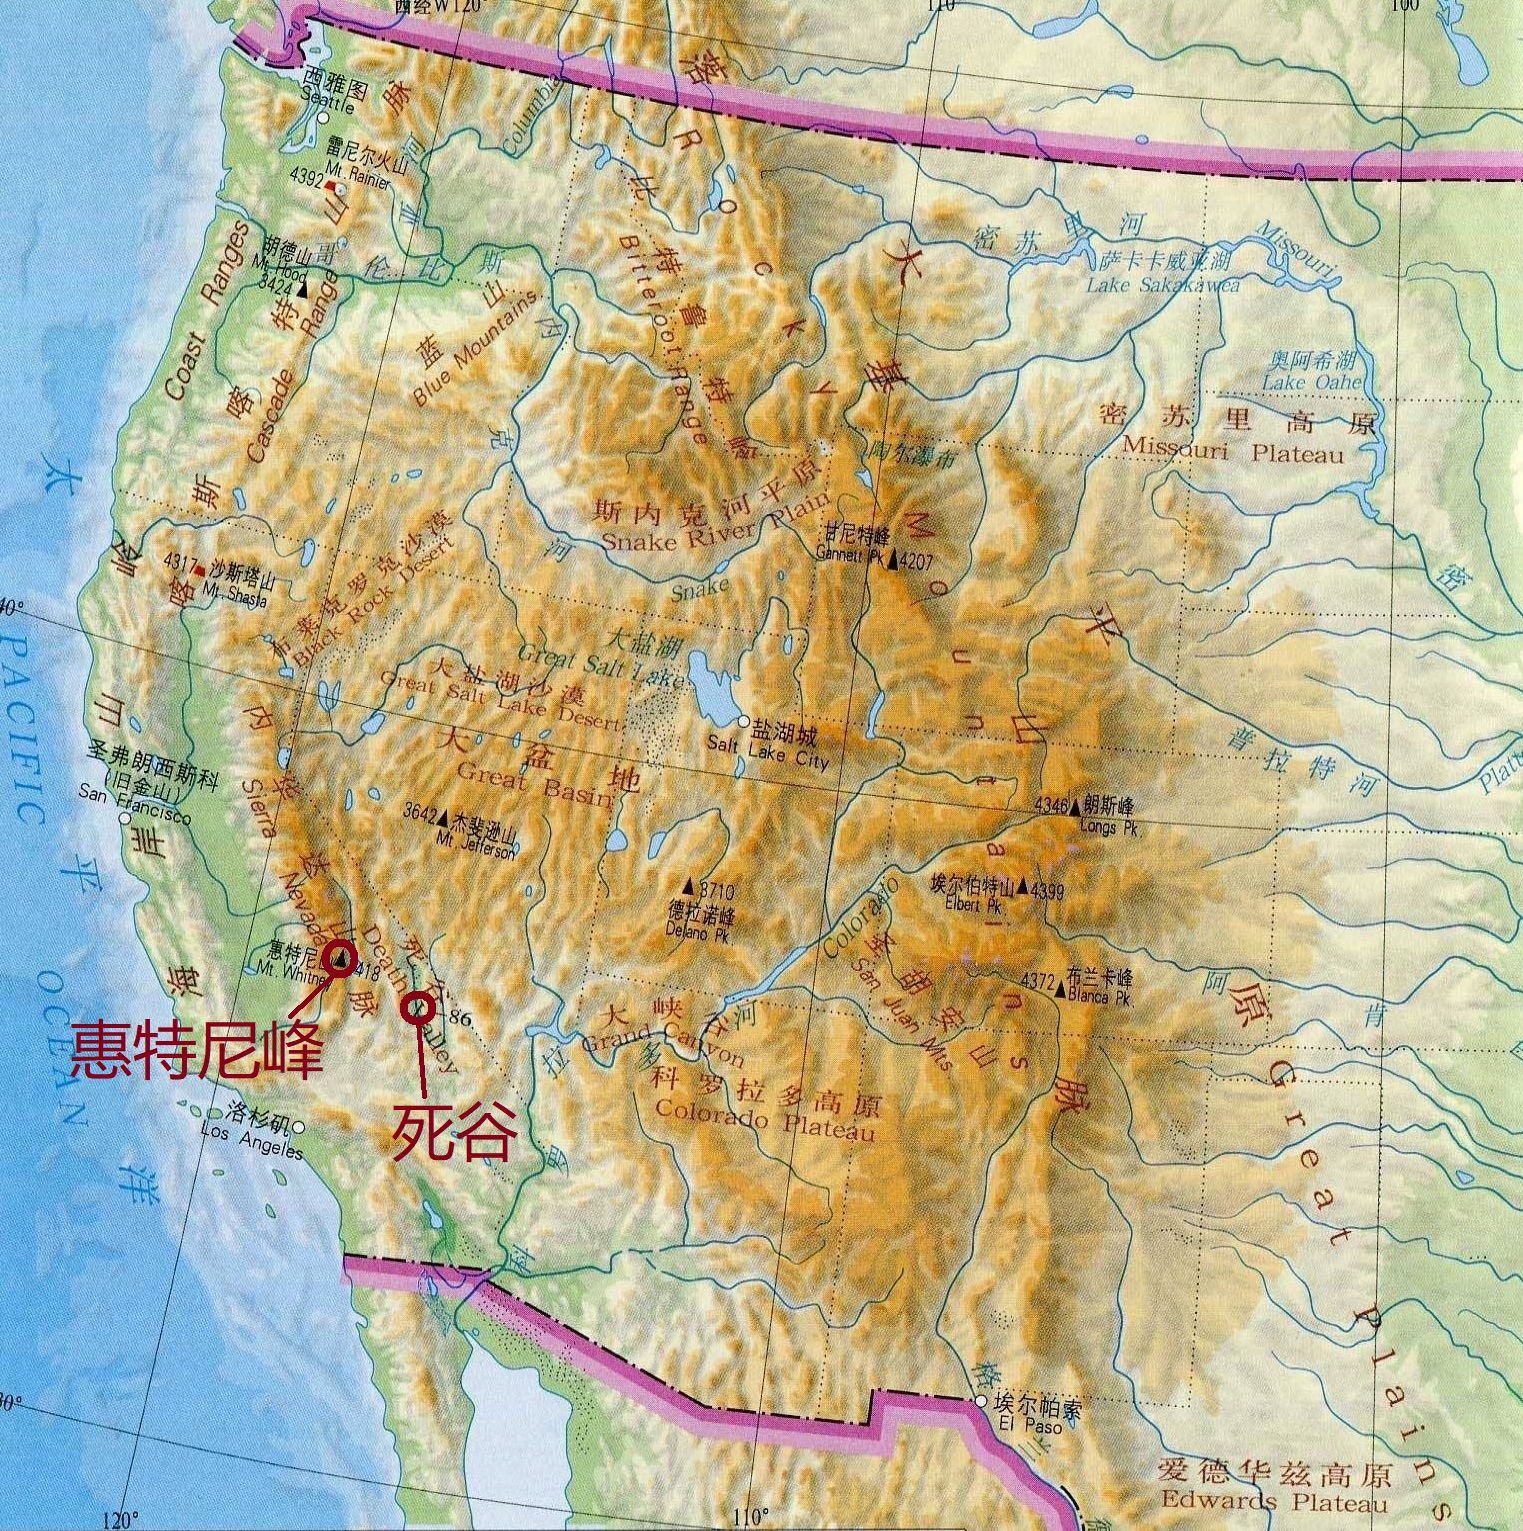 惠特尼峰和死亡谷的位置图那么美国的土地最低点在哪里呢?